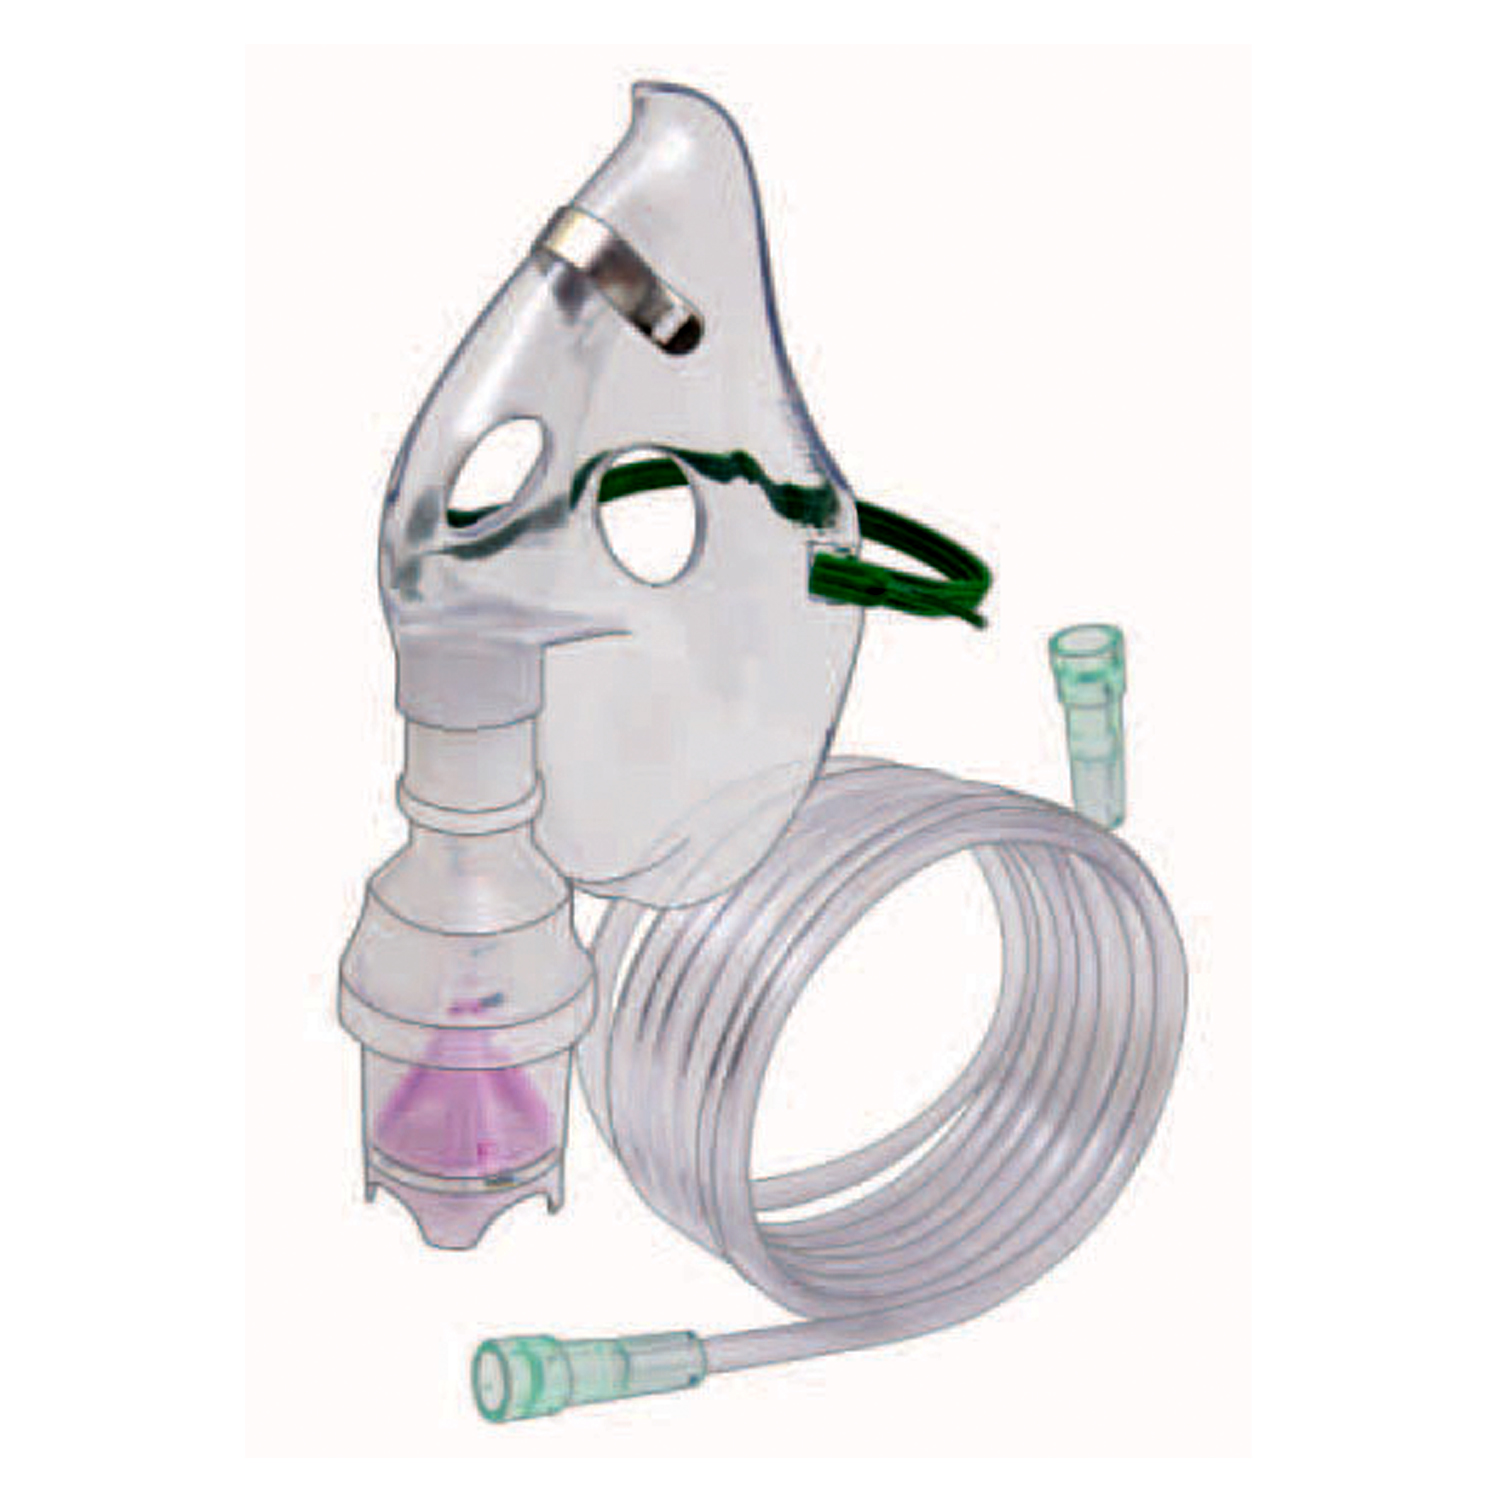 Nebulizer Kit With Adult Aerosol Mask - 7ft Oxygen Tubing